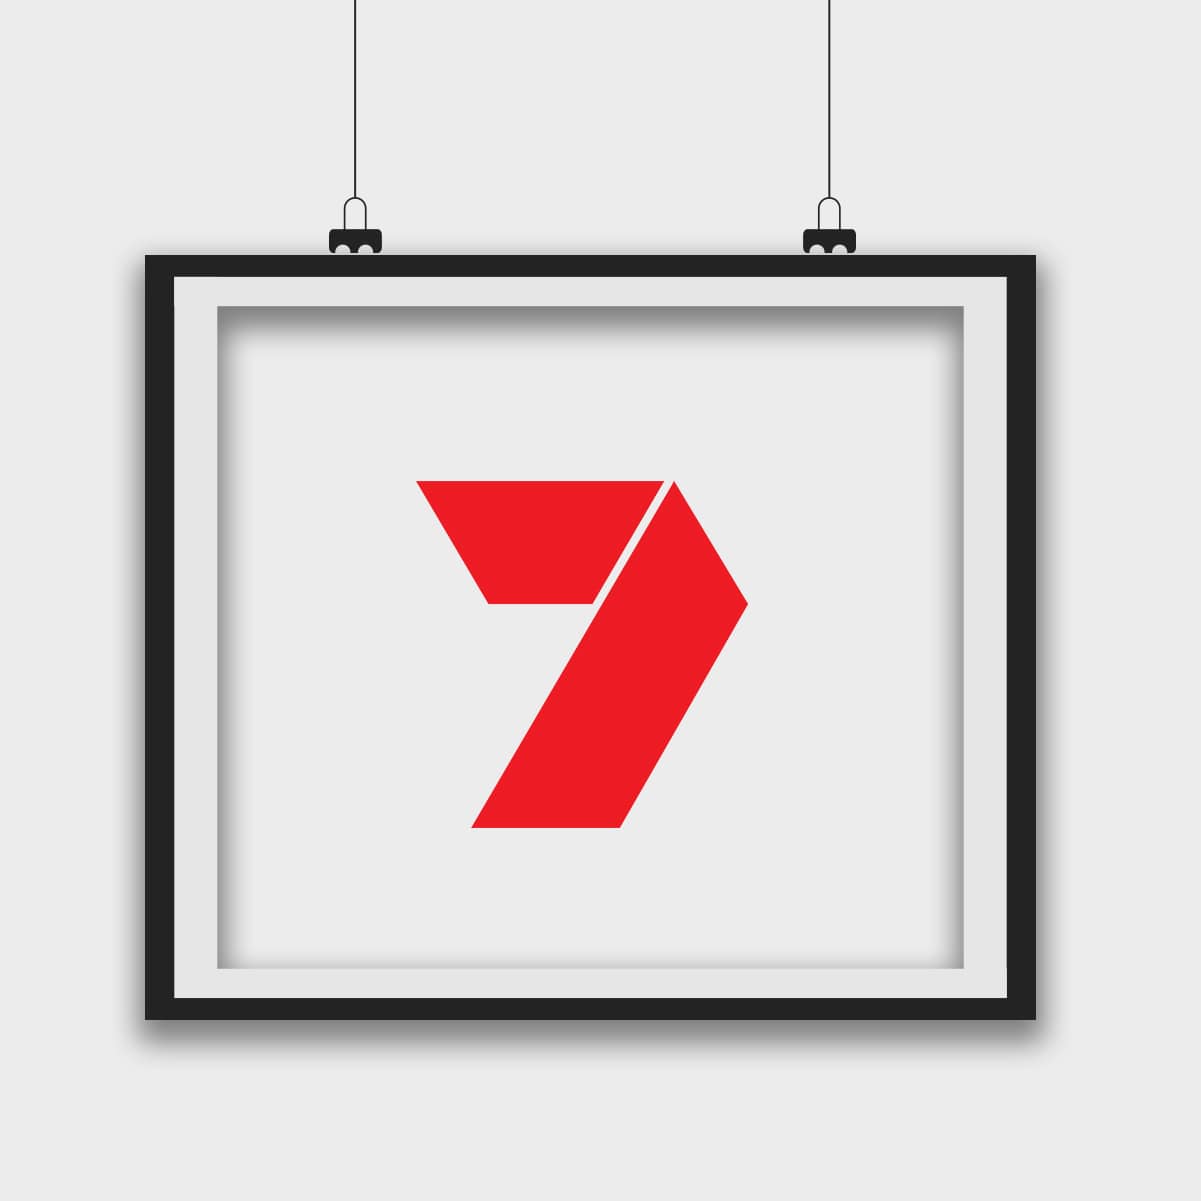 watch-channel-7-outside-australia